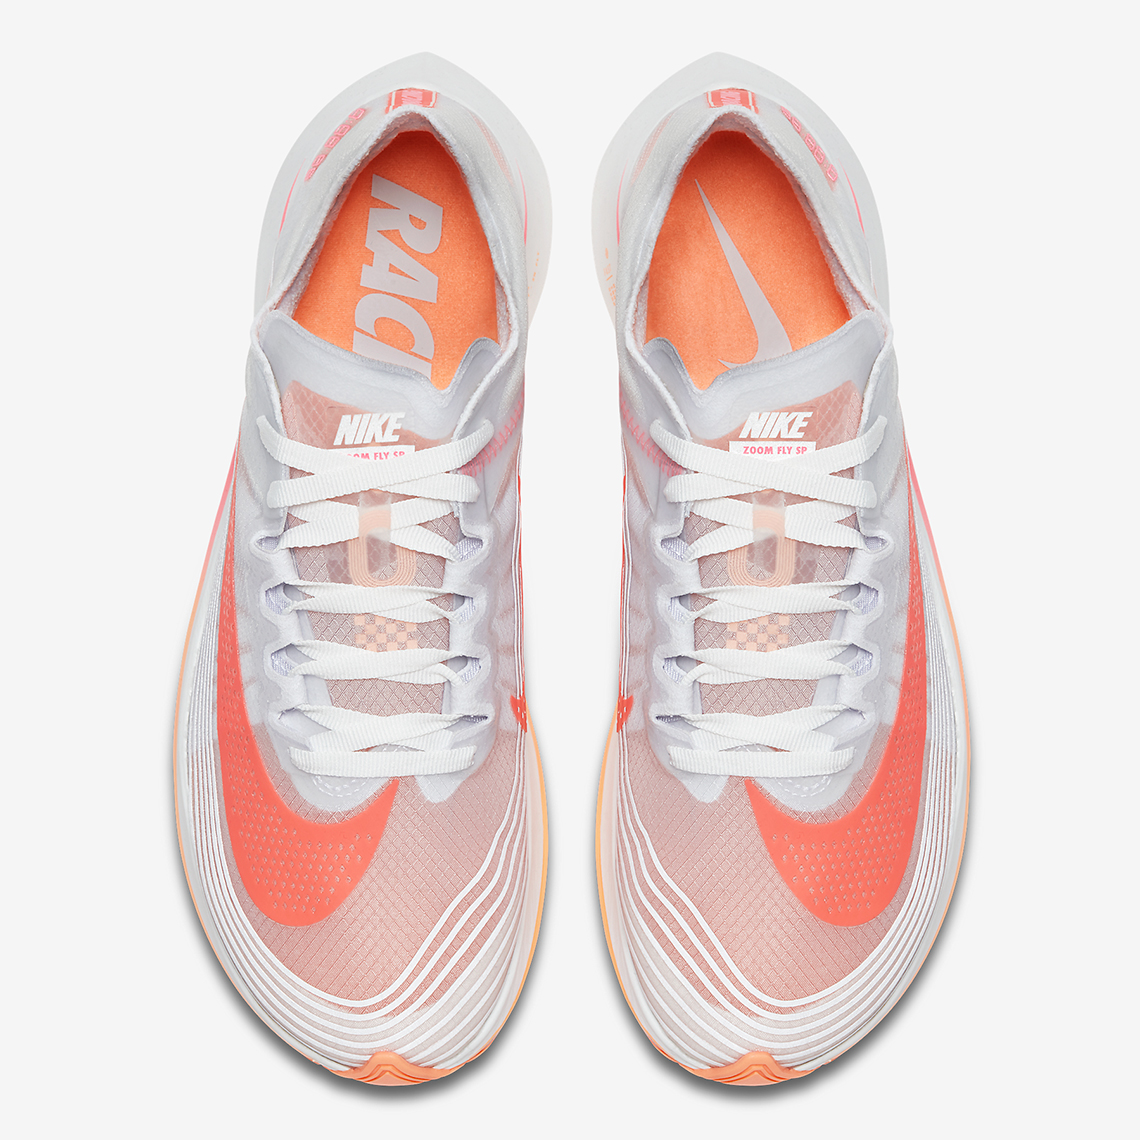 Nike Zoom Fly Sp Neon Orange Release Info 7